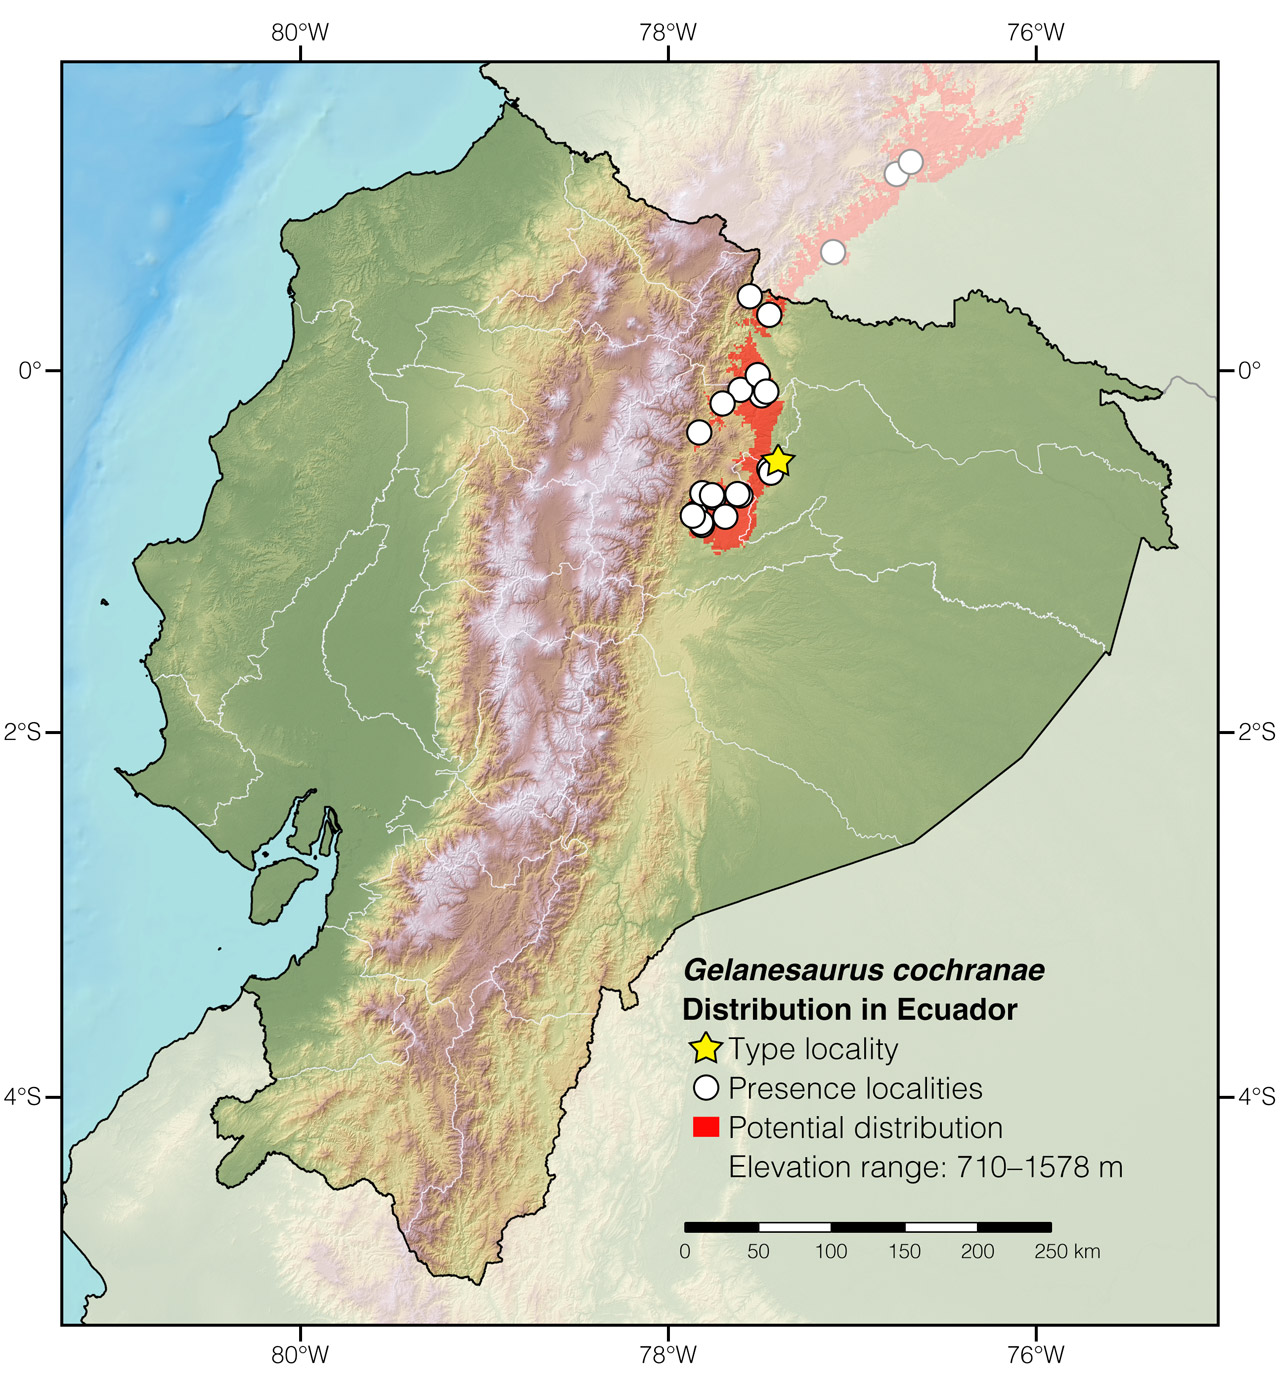 Distribution of Gelanesaurus cochranae in Ecuador